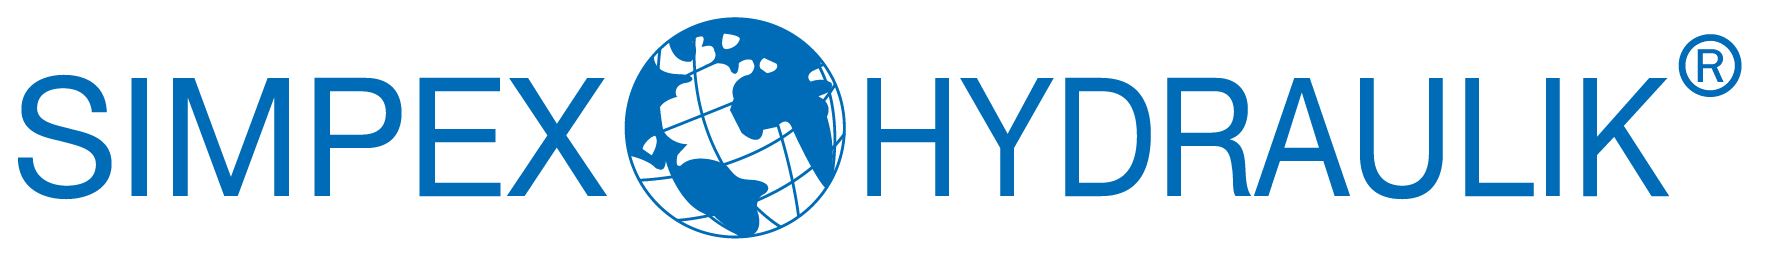 Simpex Hydraulik_logo